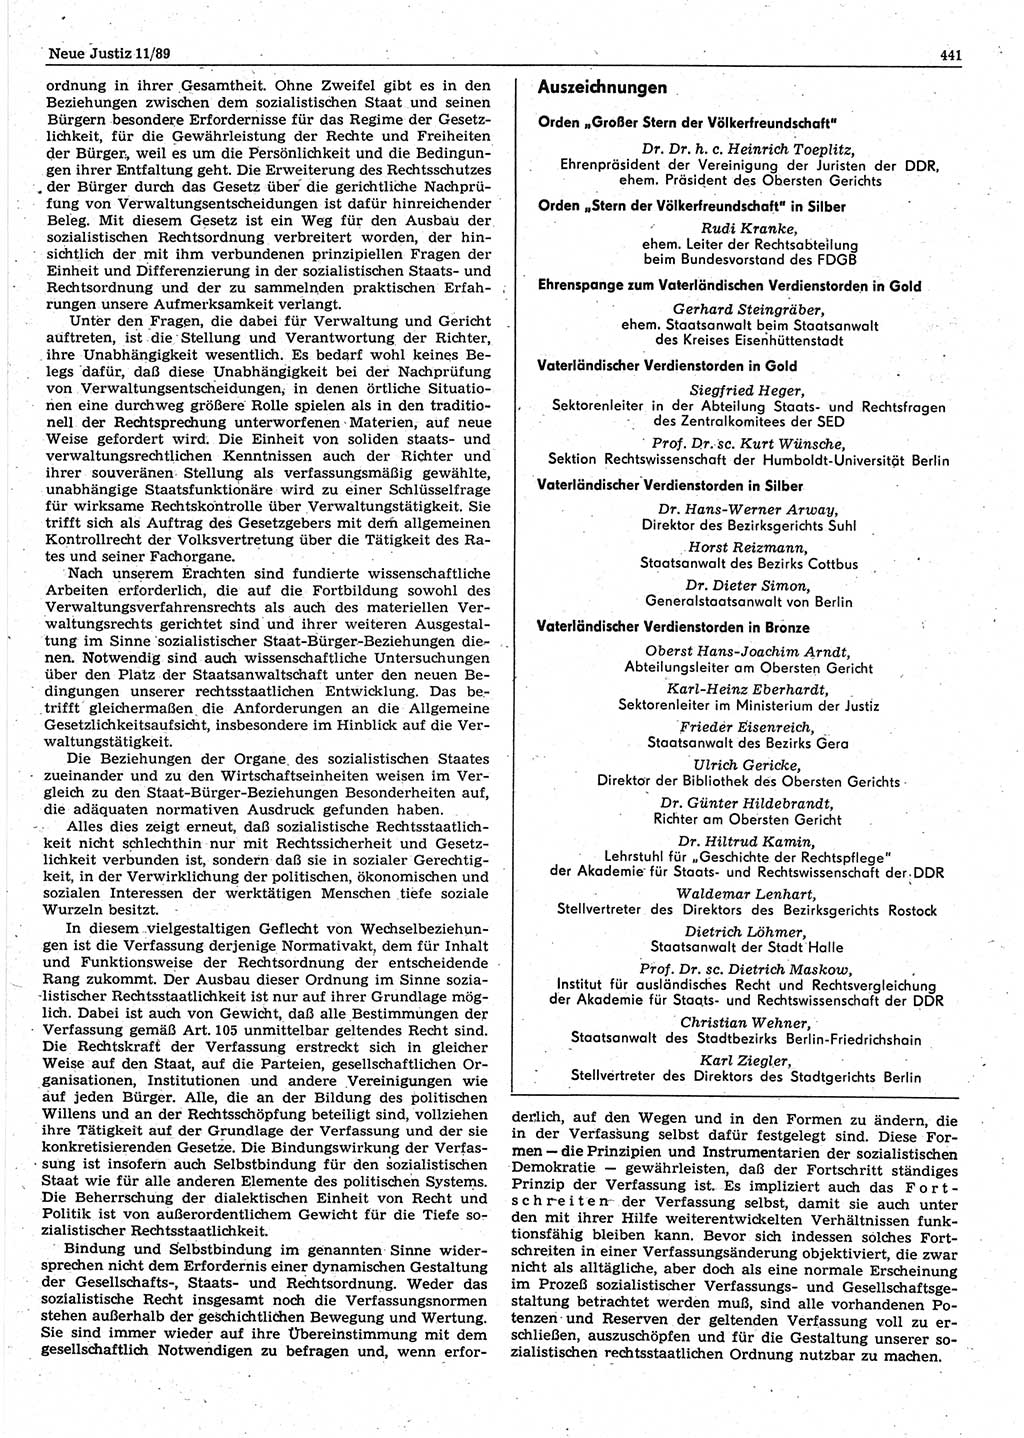 Neue Justiz (NJ), Zeitschrift für sozialistisches Recht und Gesetzlichkeit [Deutsche Demokratische Republik (DDR)], 43. Jahrgang 1989, Seite 441 (NJ DDR 1989, S. 441)